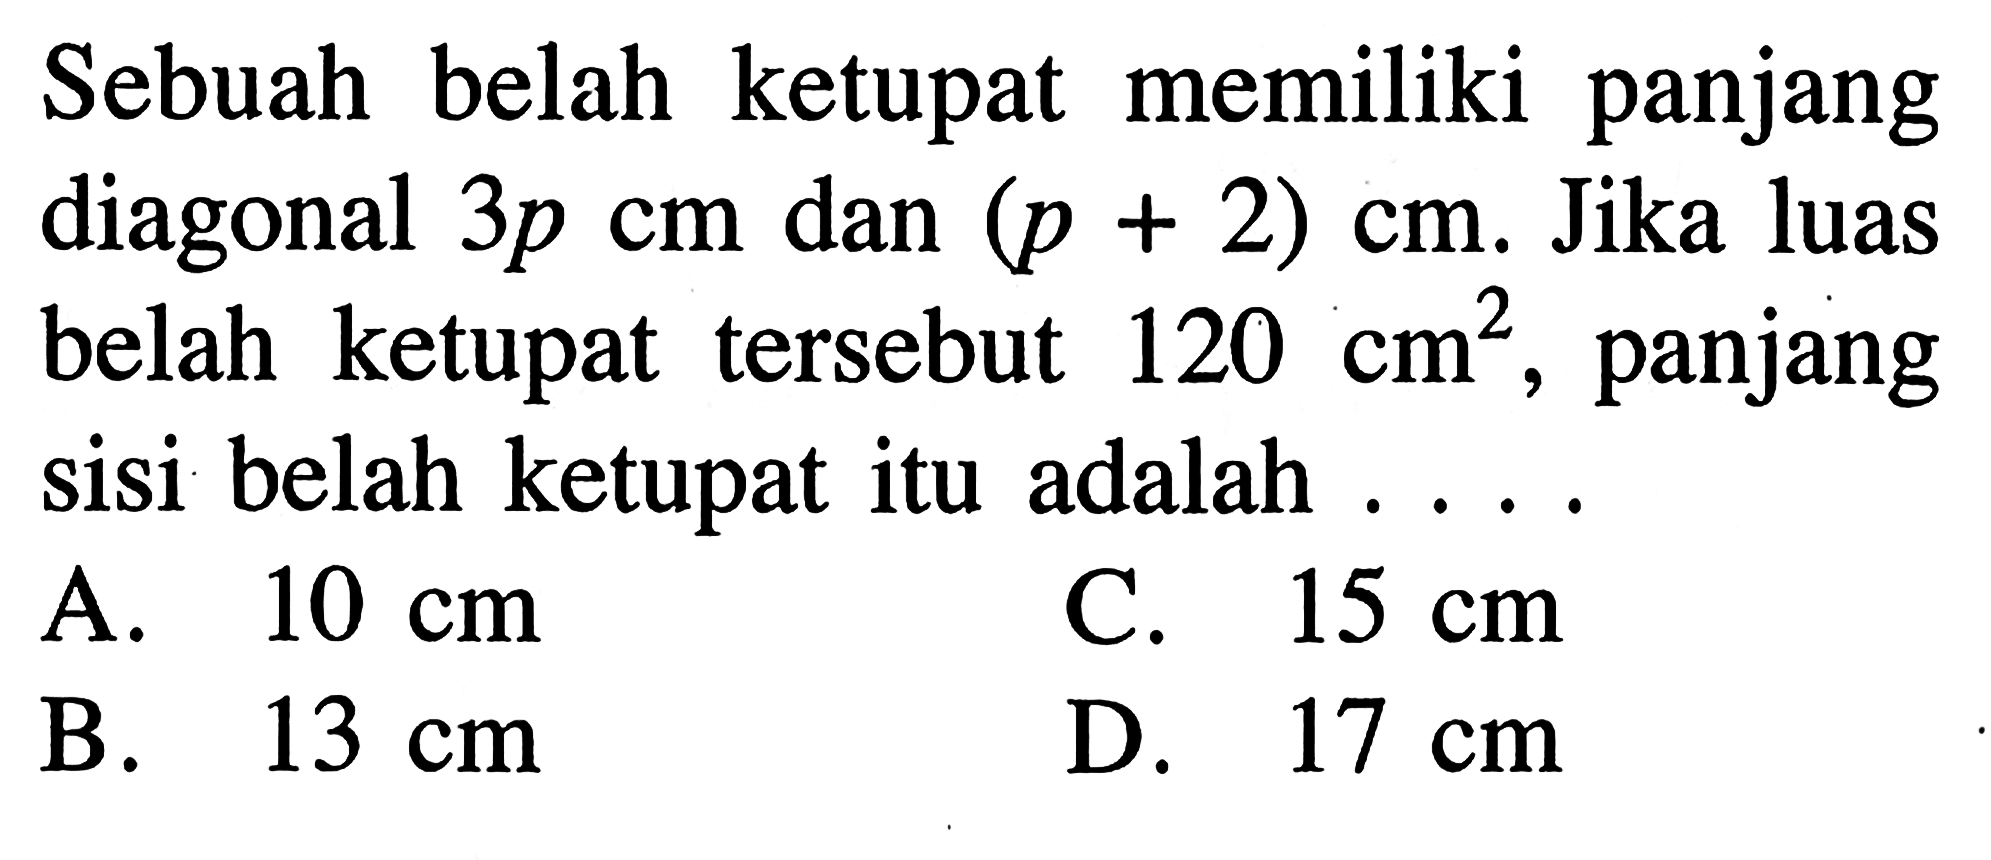 Sebuah belah ketupat memiliki panjang diagonal 3p cm dan (p + 2) cm. Jika luas belah ketupat tersebut 120  cm^2. panjang sisi belah ketupat itu adalah 